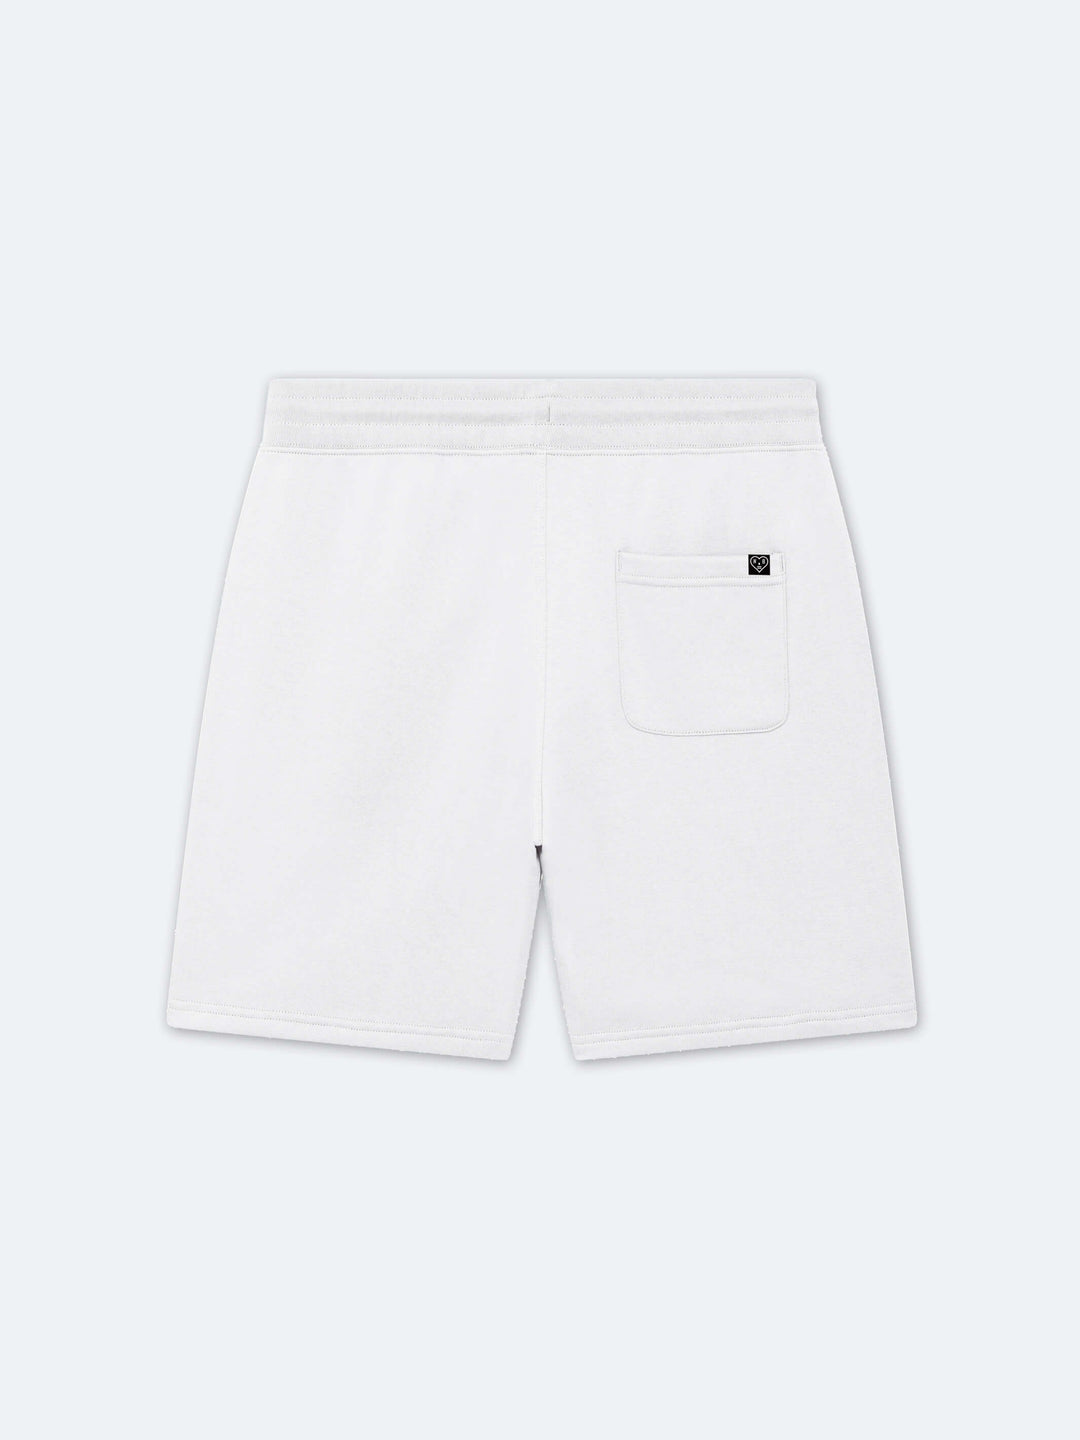 Stencil Shorts (White)